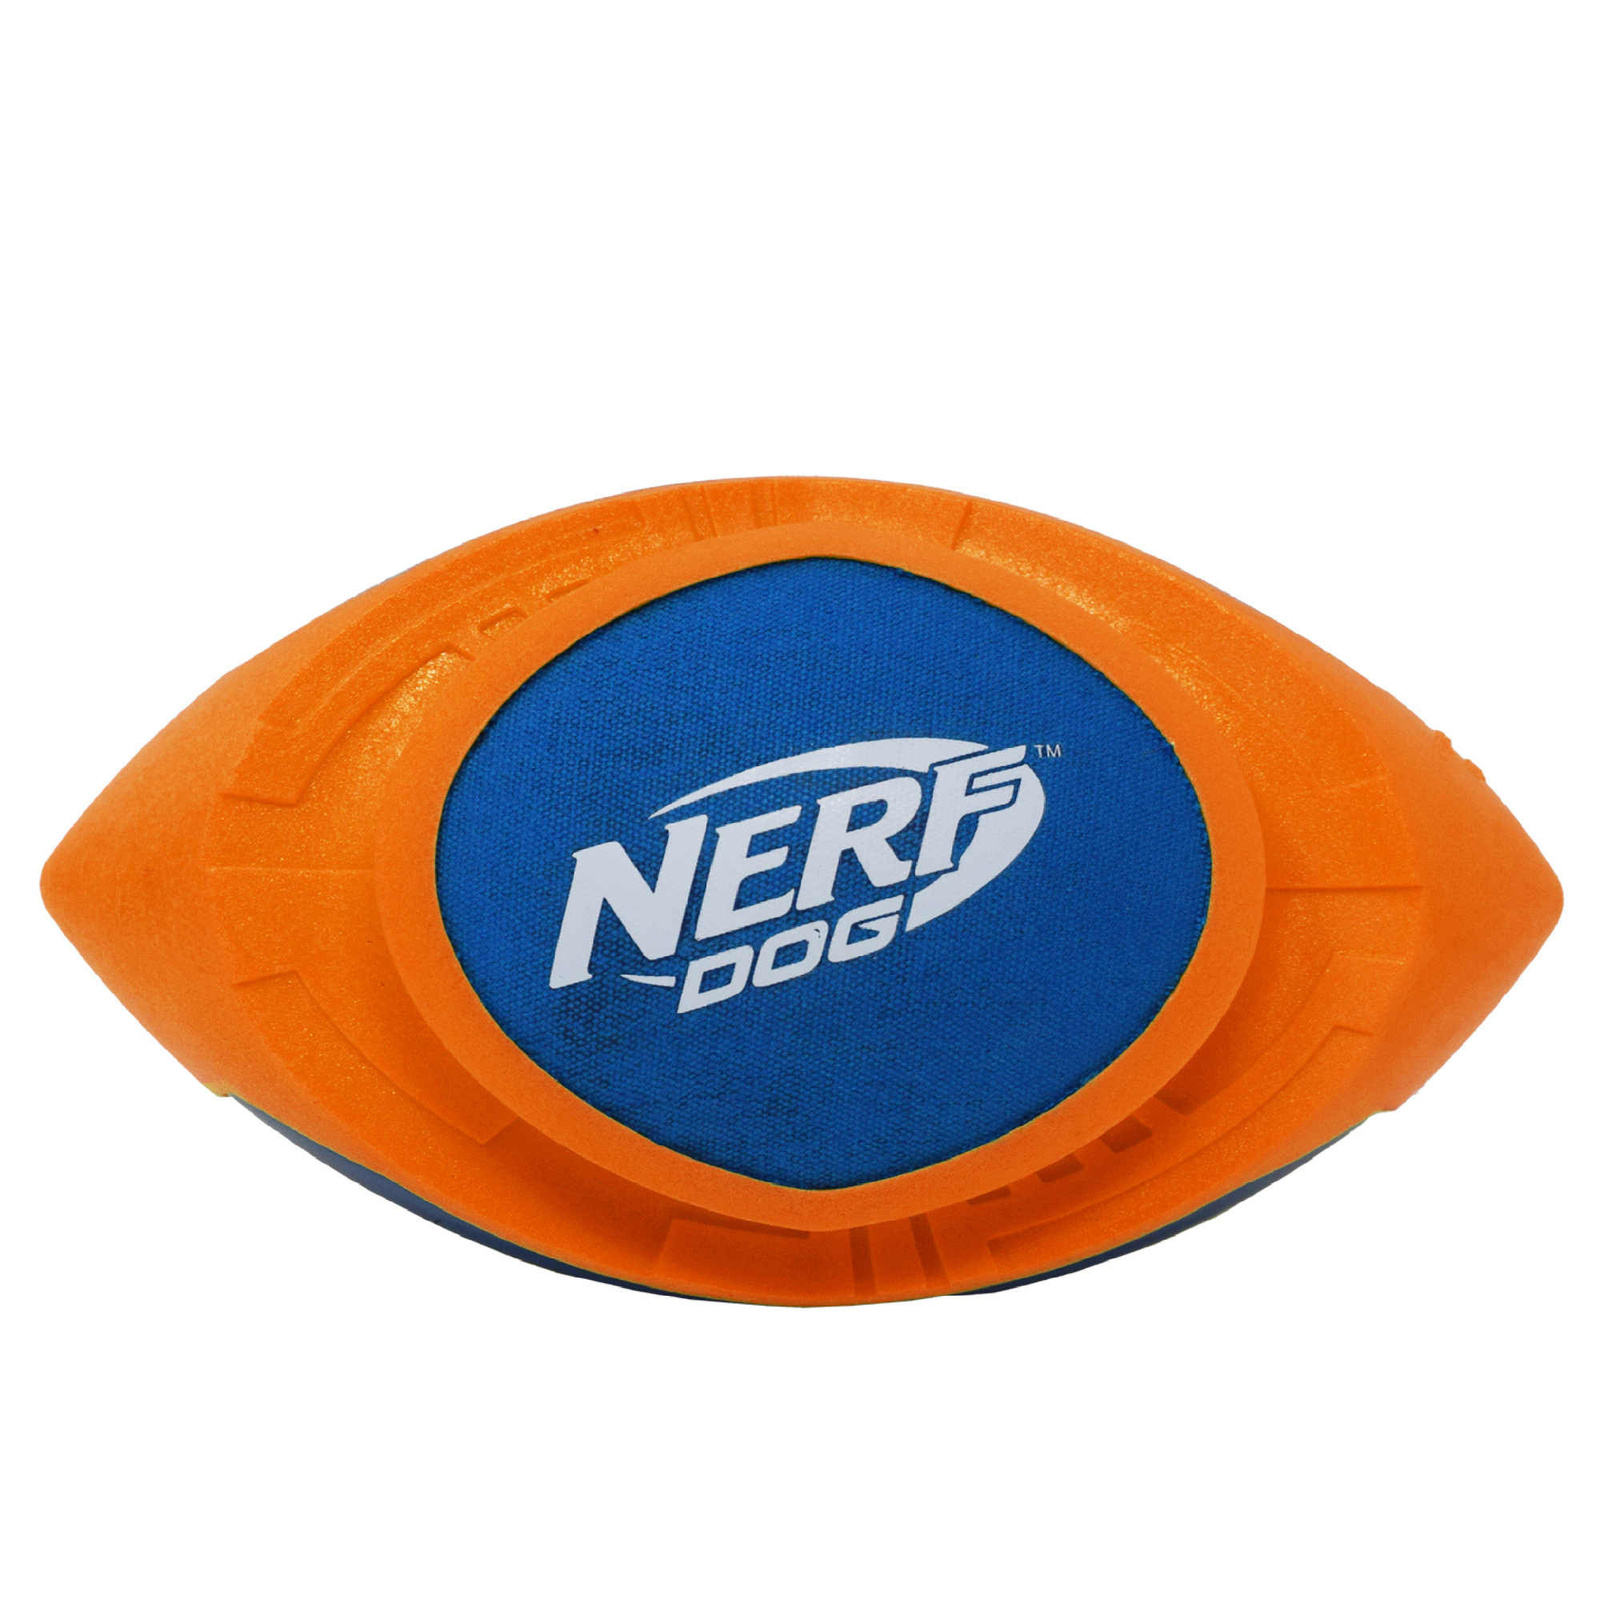 Nerf Nerf мяч для регби из вспененной резины и нейлона, 18 см (серия Мегатон), (синий/оранжевый) (263 г) nerf dog мяч для регби из термопластичной резины 18 см серия мегатон синий оранжевый